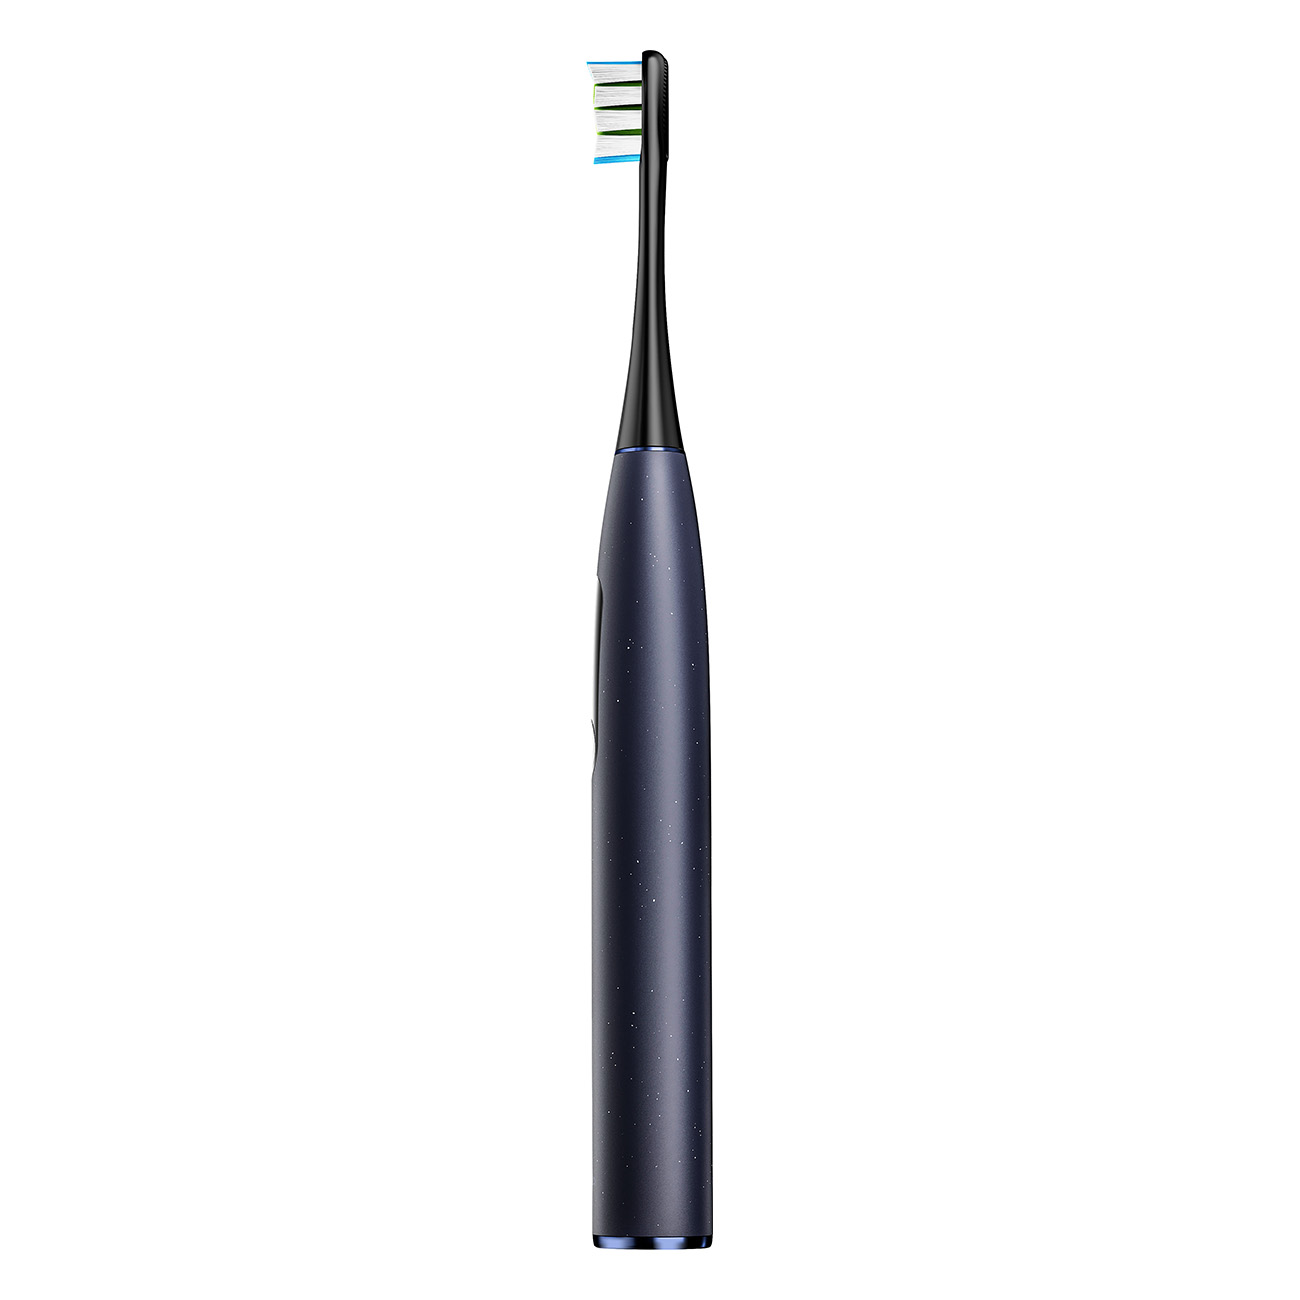 OCLEAN Electric Toothbrush Zahnbürste X Elektrische Digital Pro blau